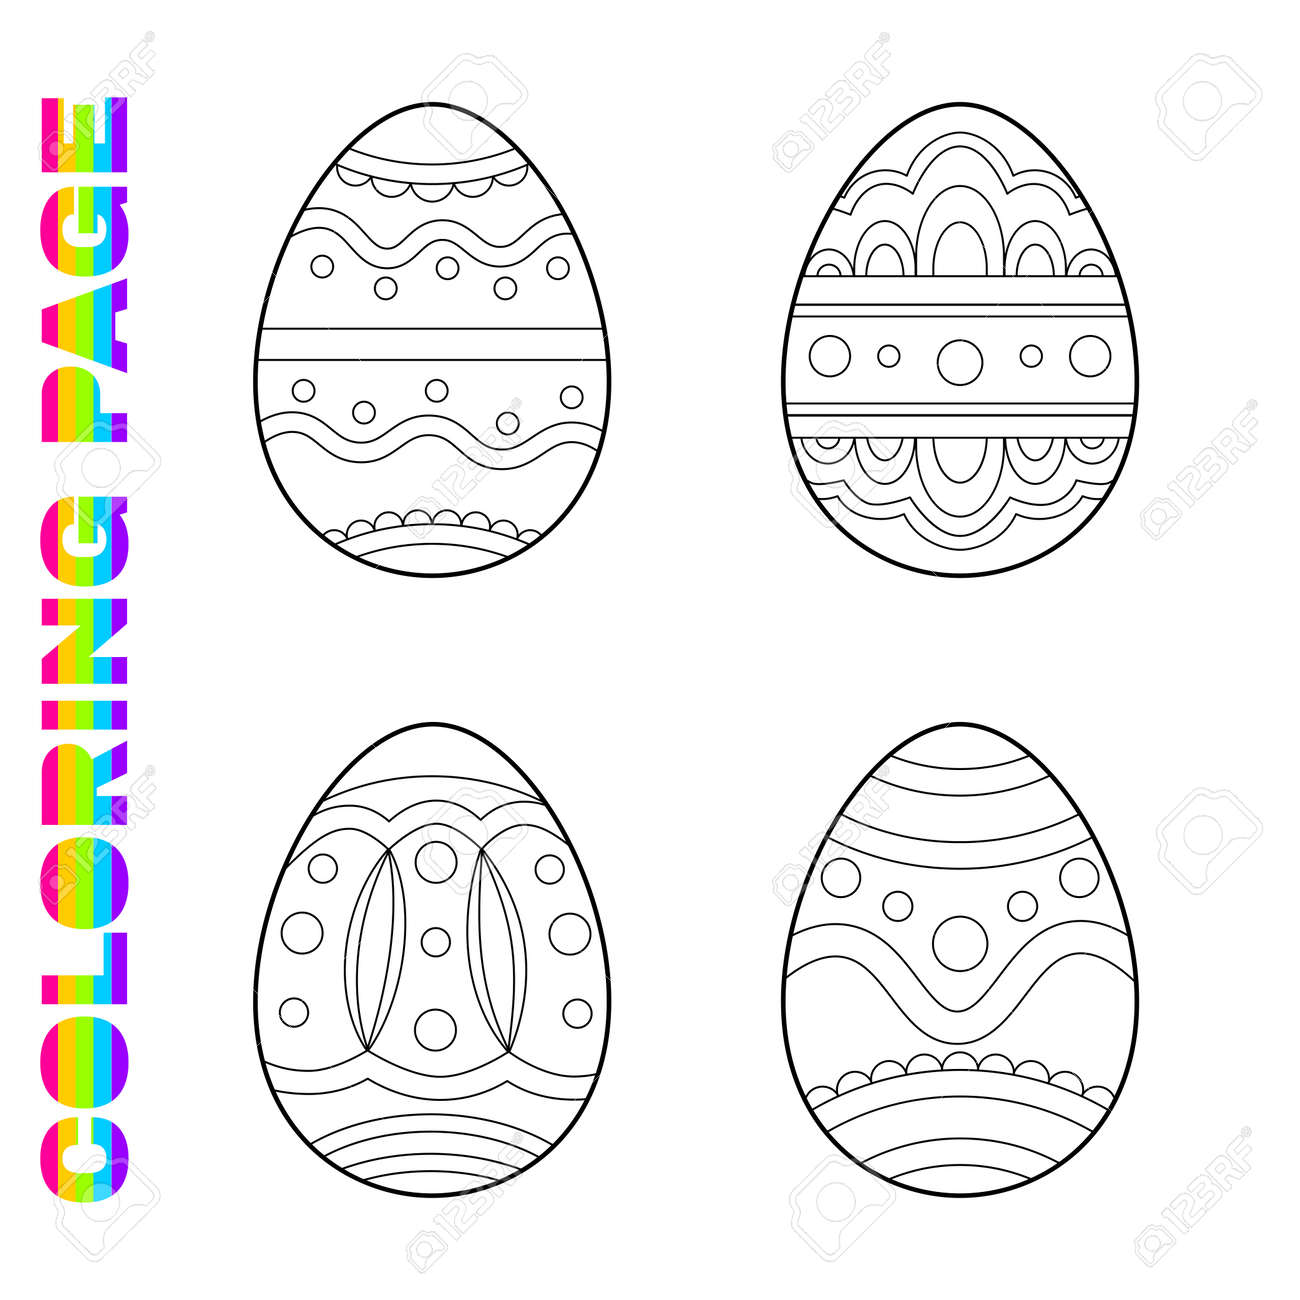 Coloring page for kids with ornate easter eggs for toddlers printable worksheet for kindergarten and preschool children activity page ðððððñññ svg ððµðºñðññ ð ððððñ ðððññññðñðð ððµð